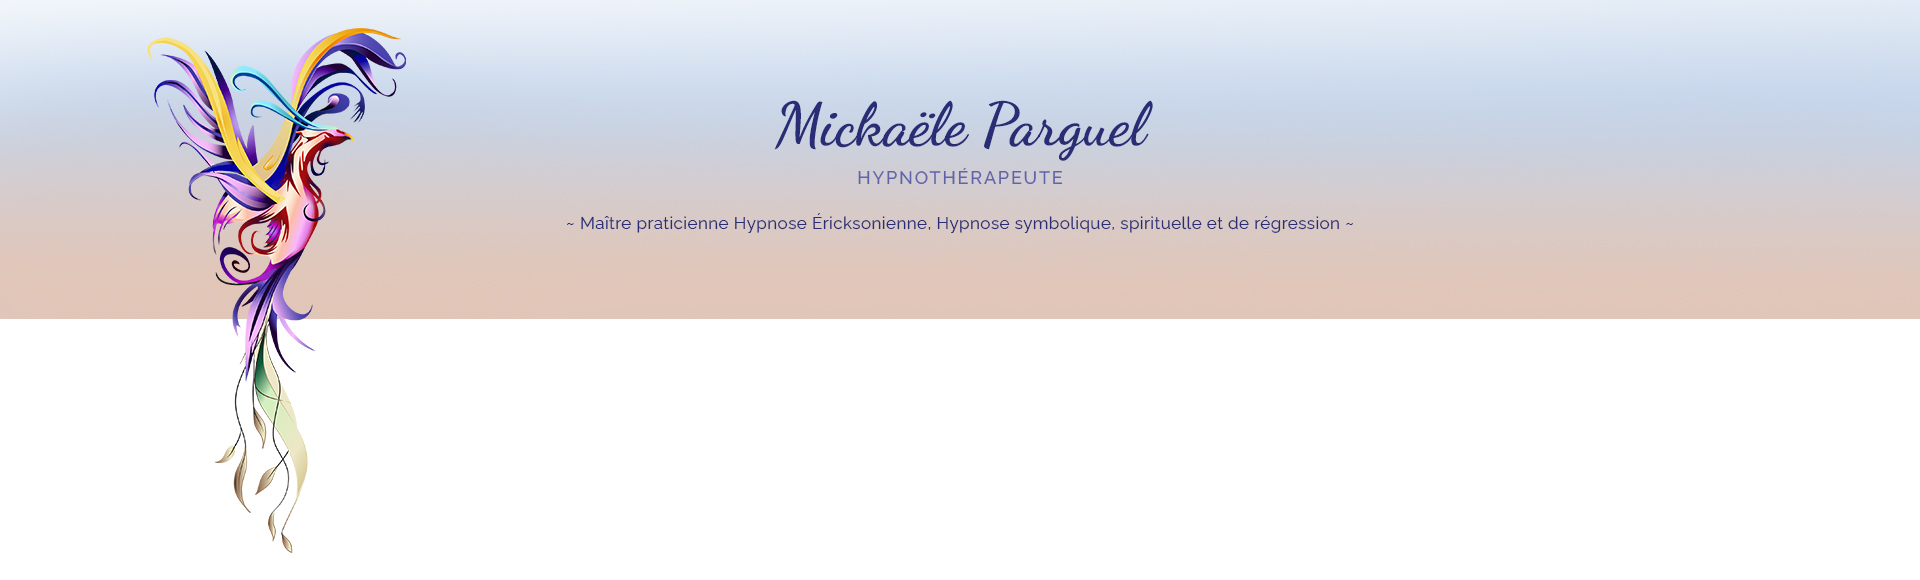 Mickaële Parguel - Hypnose - hypnothérapeute aux Abrets en Dauphiné, Isère et à distance - Hypnose Ericksonienne, hypnose symbolique, spirituelle et de régression 